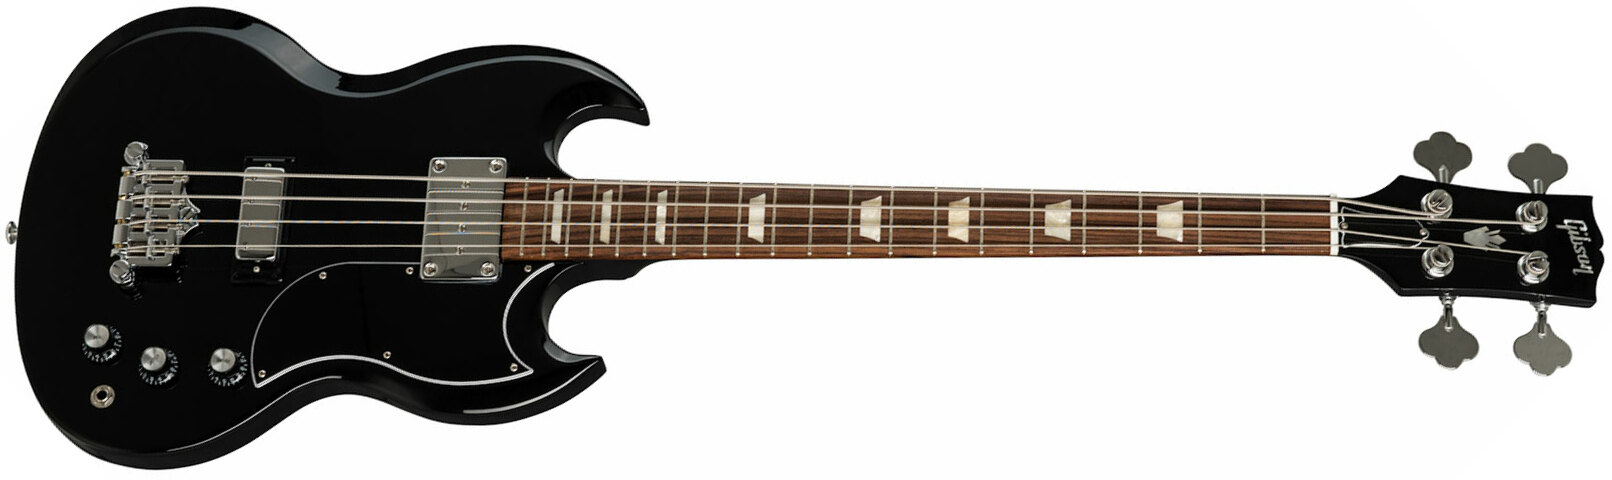 Gibson Sg Standard Bass Original Short Scale Rw - Ebony - Bajo eléctrico de cuerpo sólido - Main picture